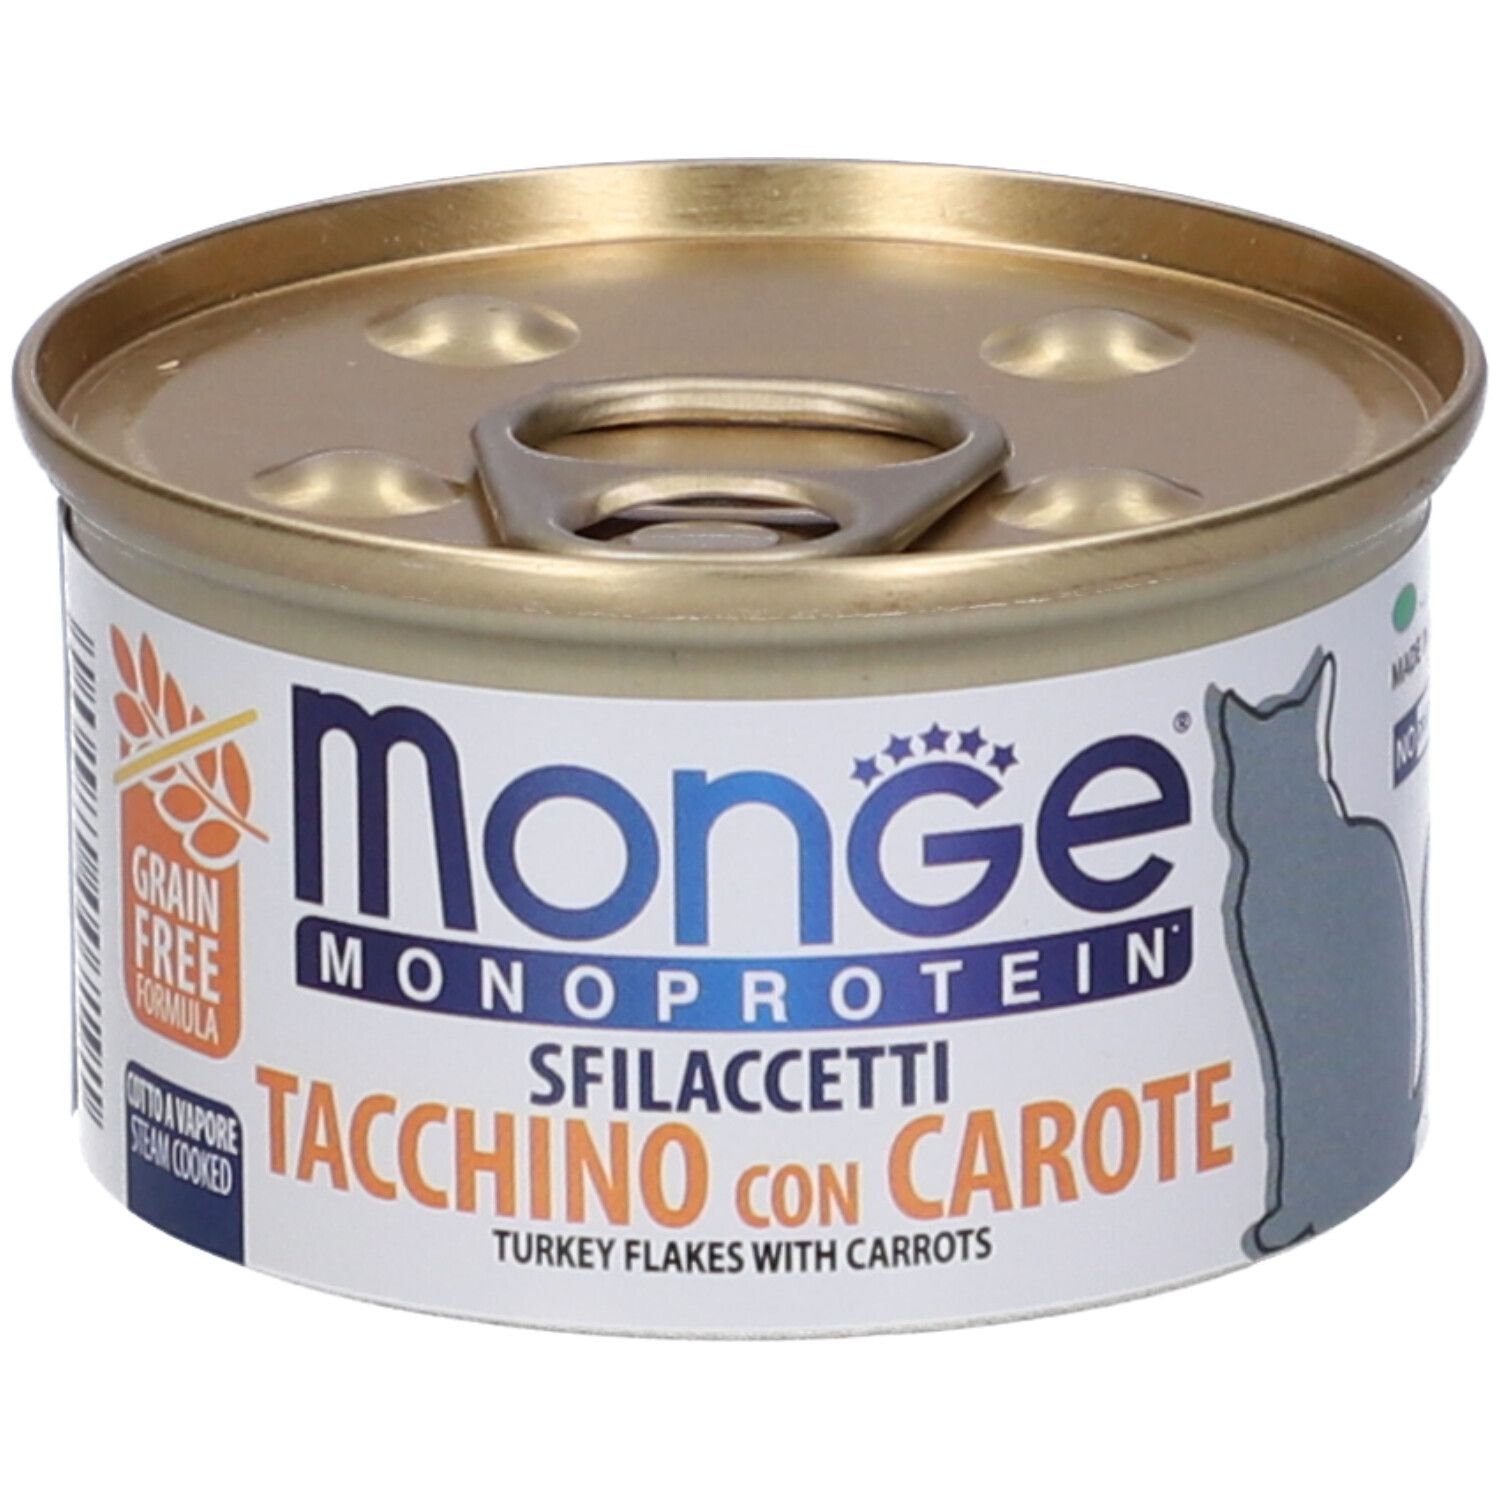 Image of Monge Monoprotein Sfilaccetti Tacchino Con Carote